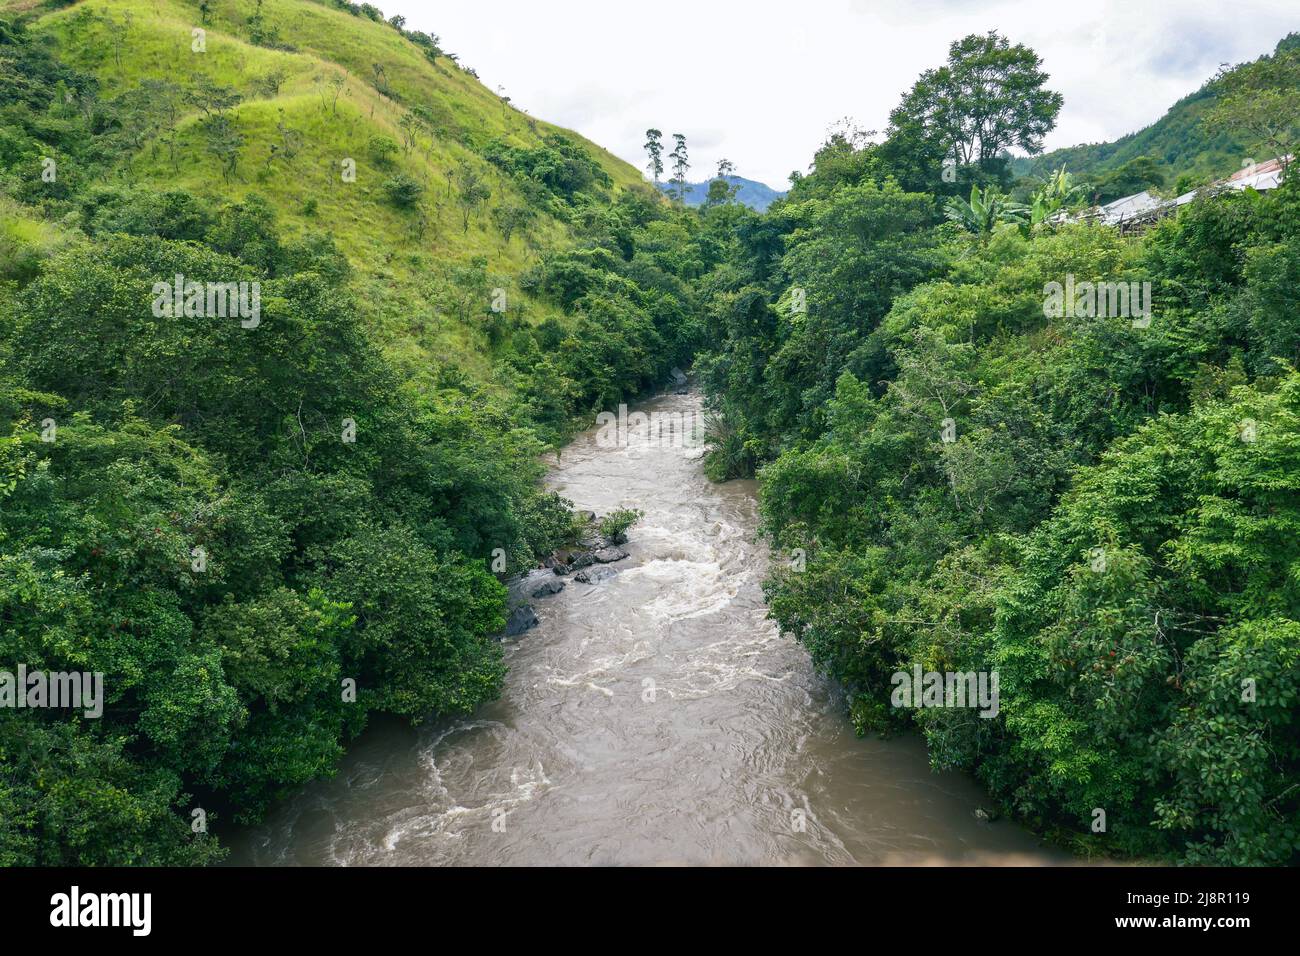 Scenic view of Kiwirar River in Mbeya, Tanzania Stock Photo